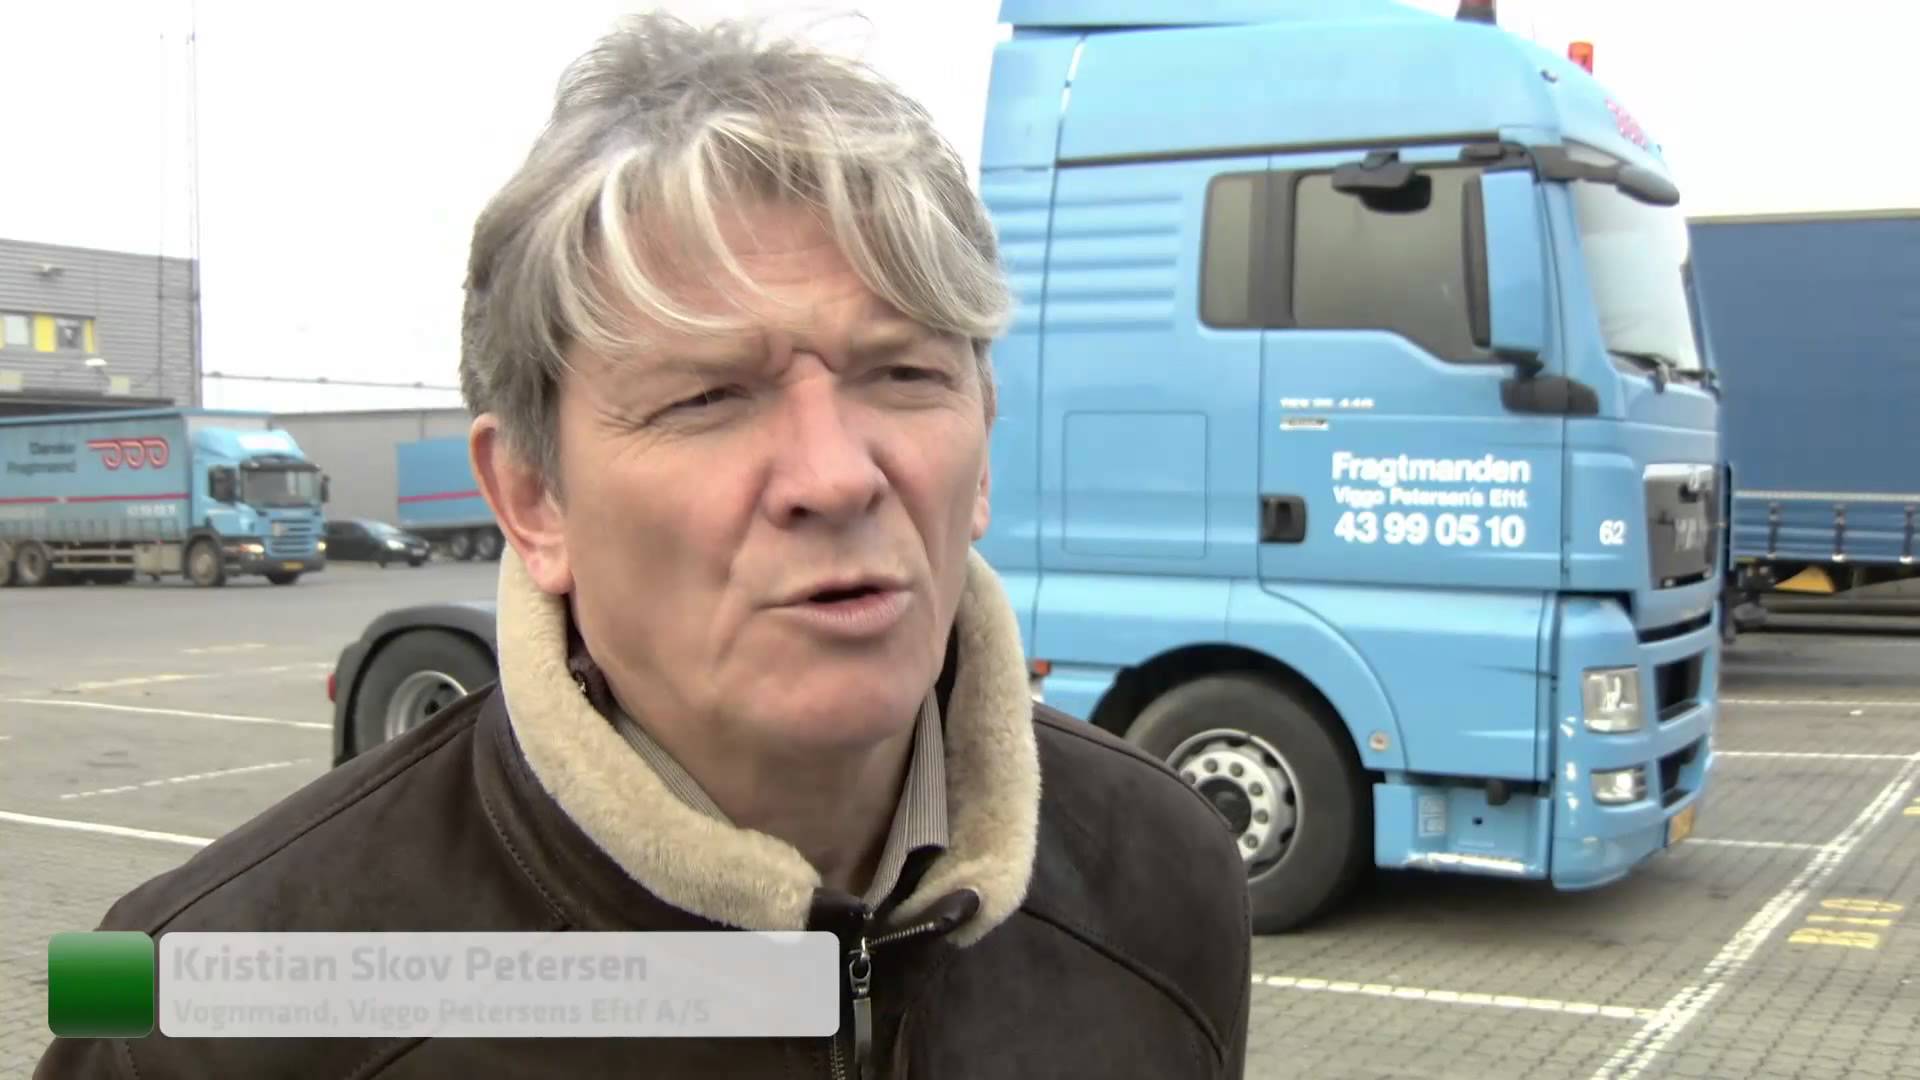 Billede tilhørende: Dansker opfinder liftsystem til lastbiler